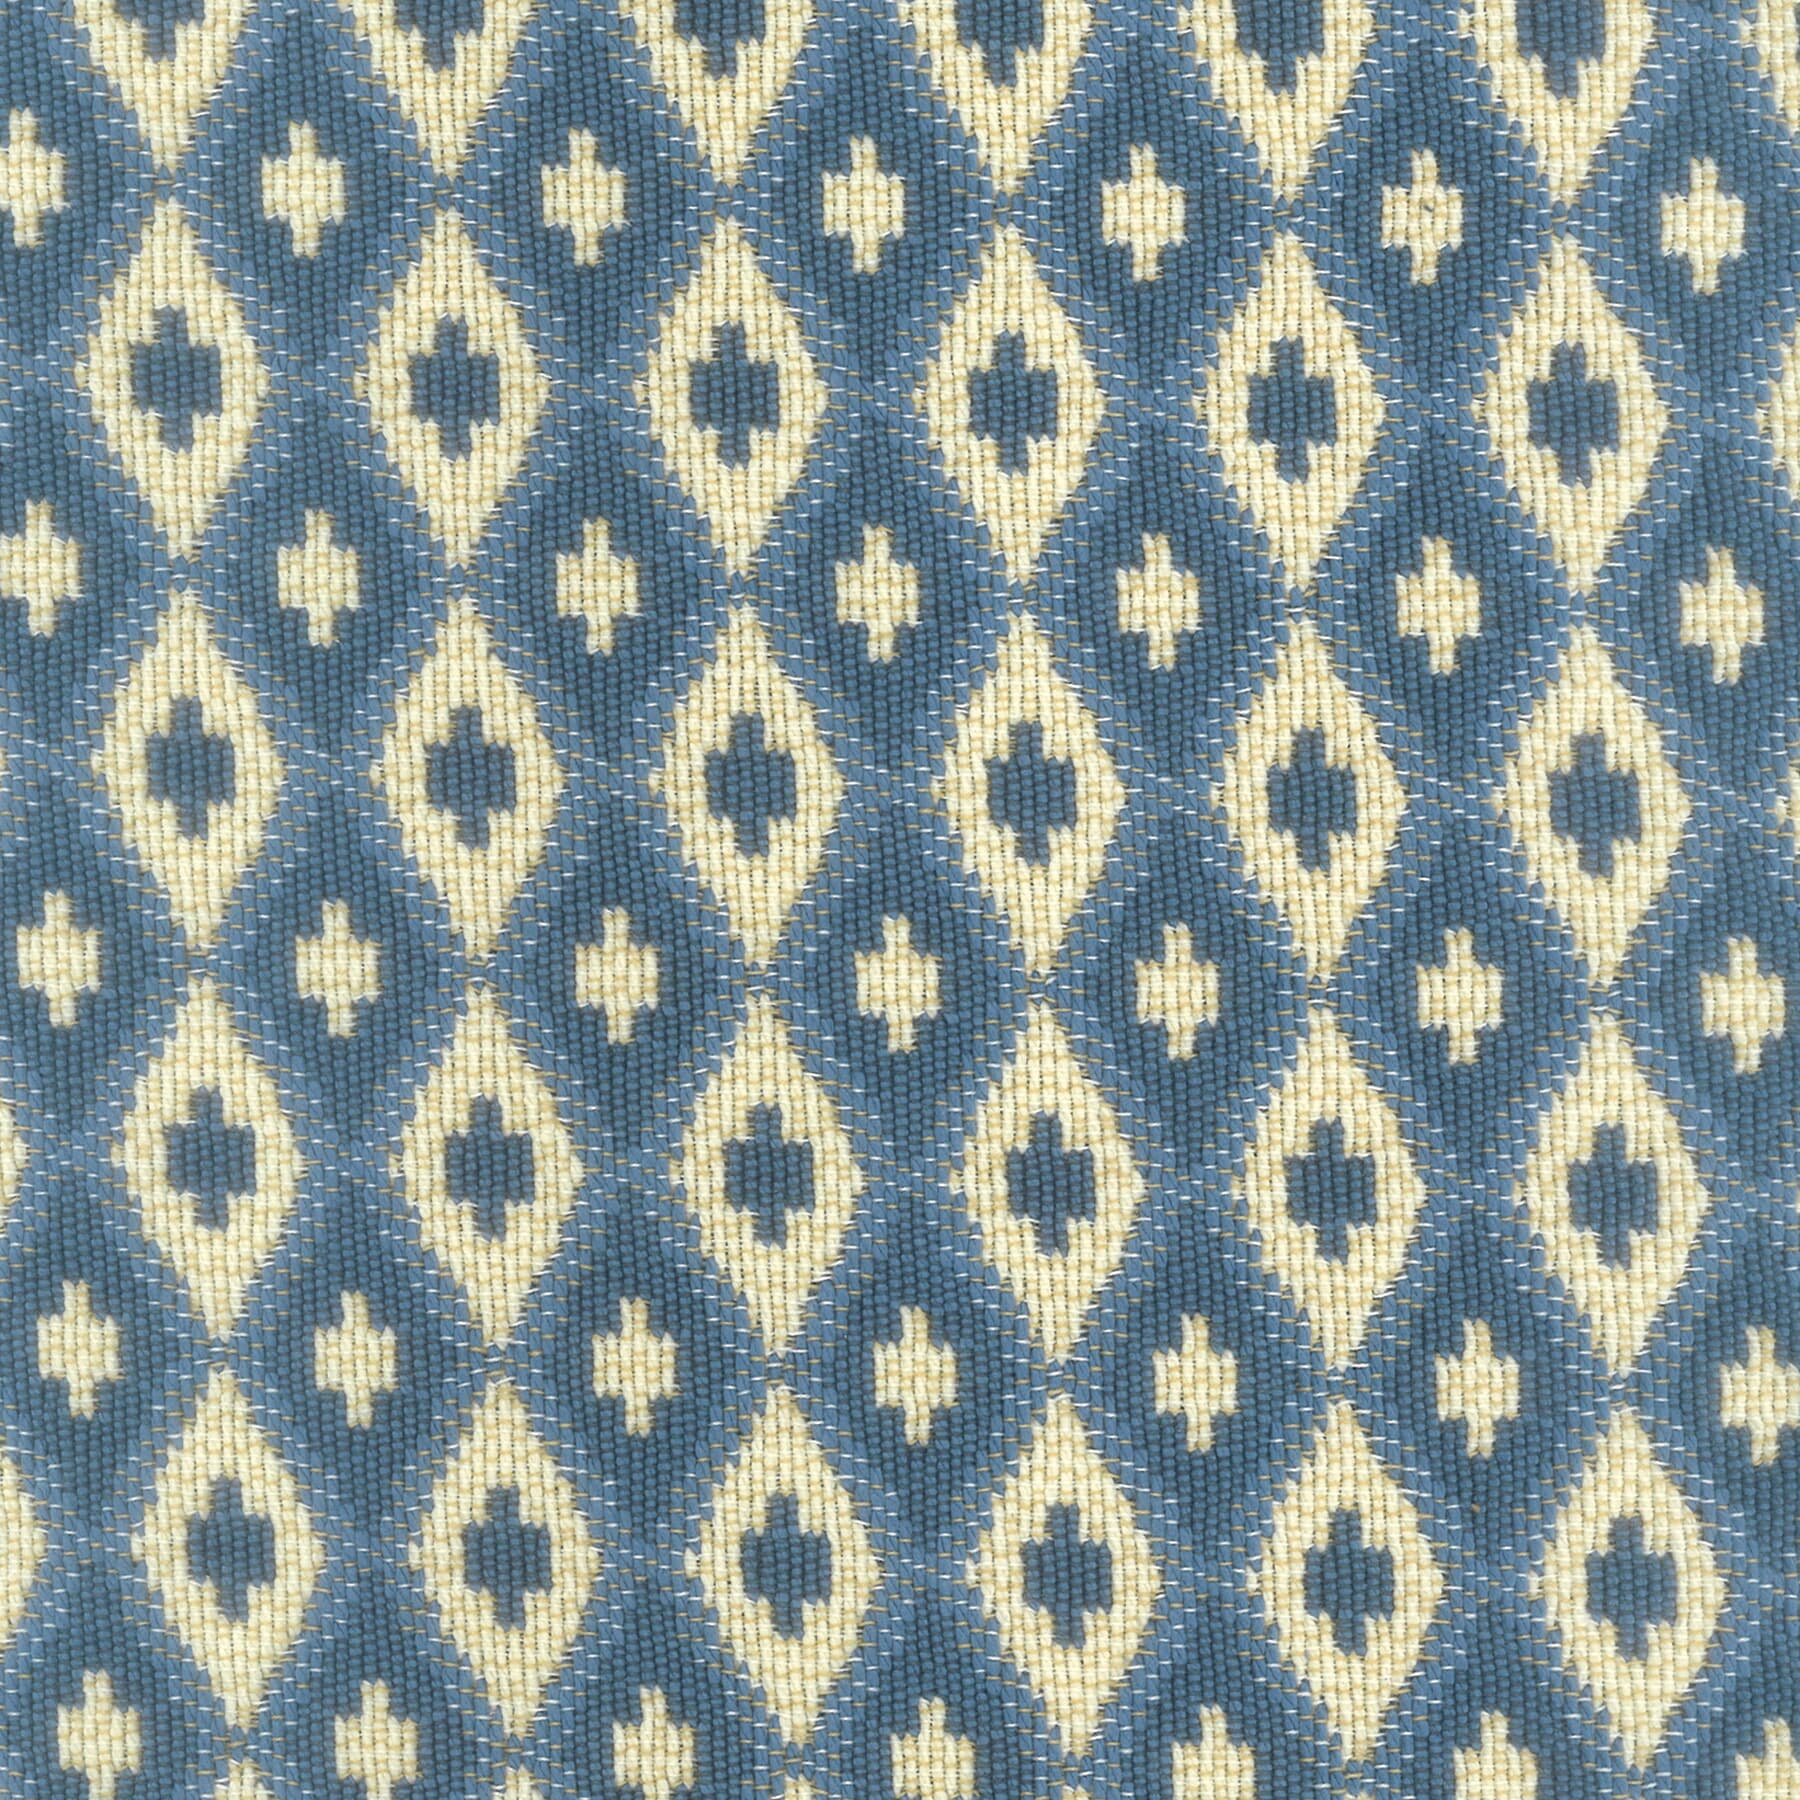 7719-04 Woven Diamond by Stout Fabric